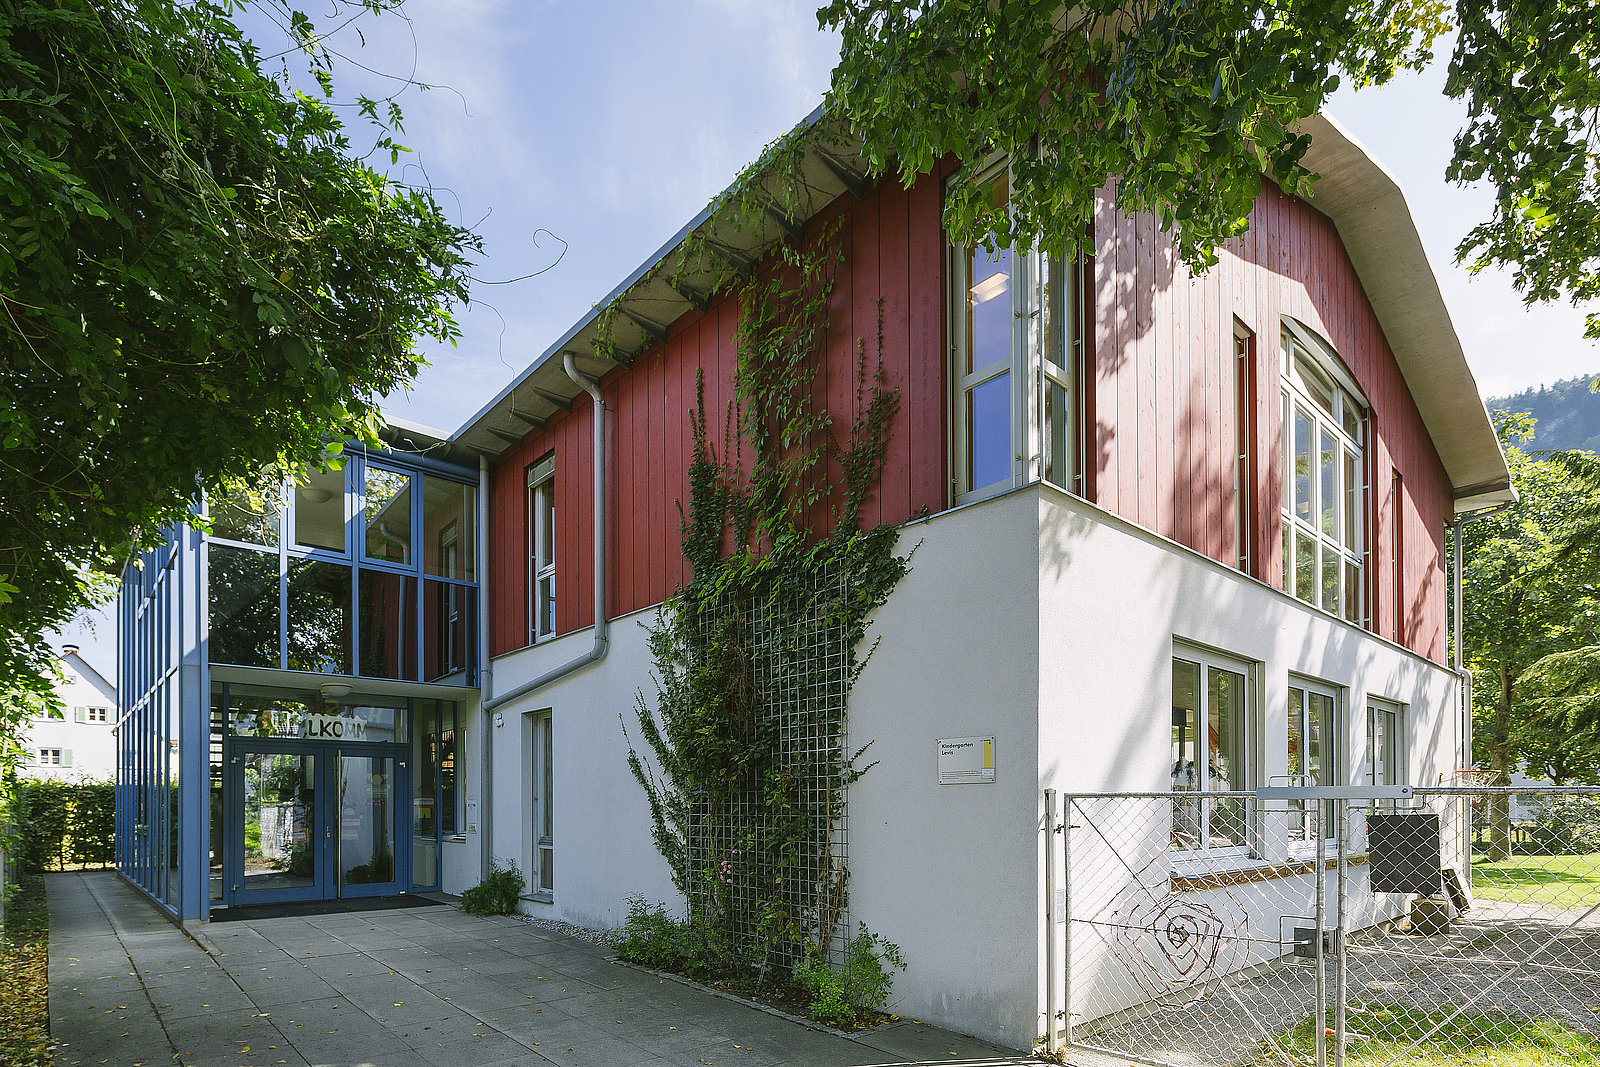 Stadt Feldkirch, Schulen, Kindergarten, oeffentliche Einrichtungen, Homepage, Gebaeude, Architektur